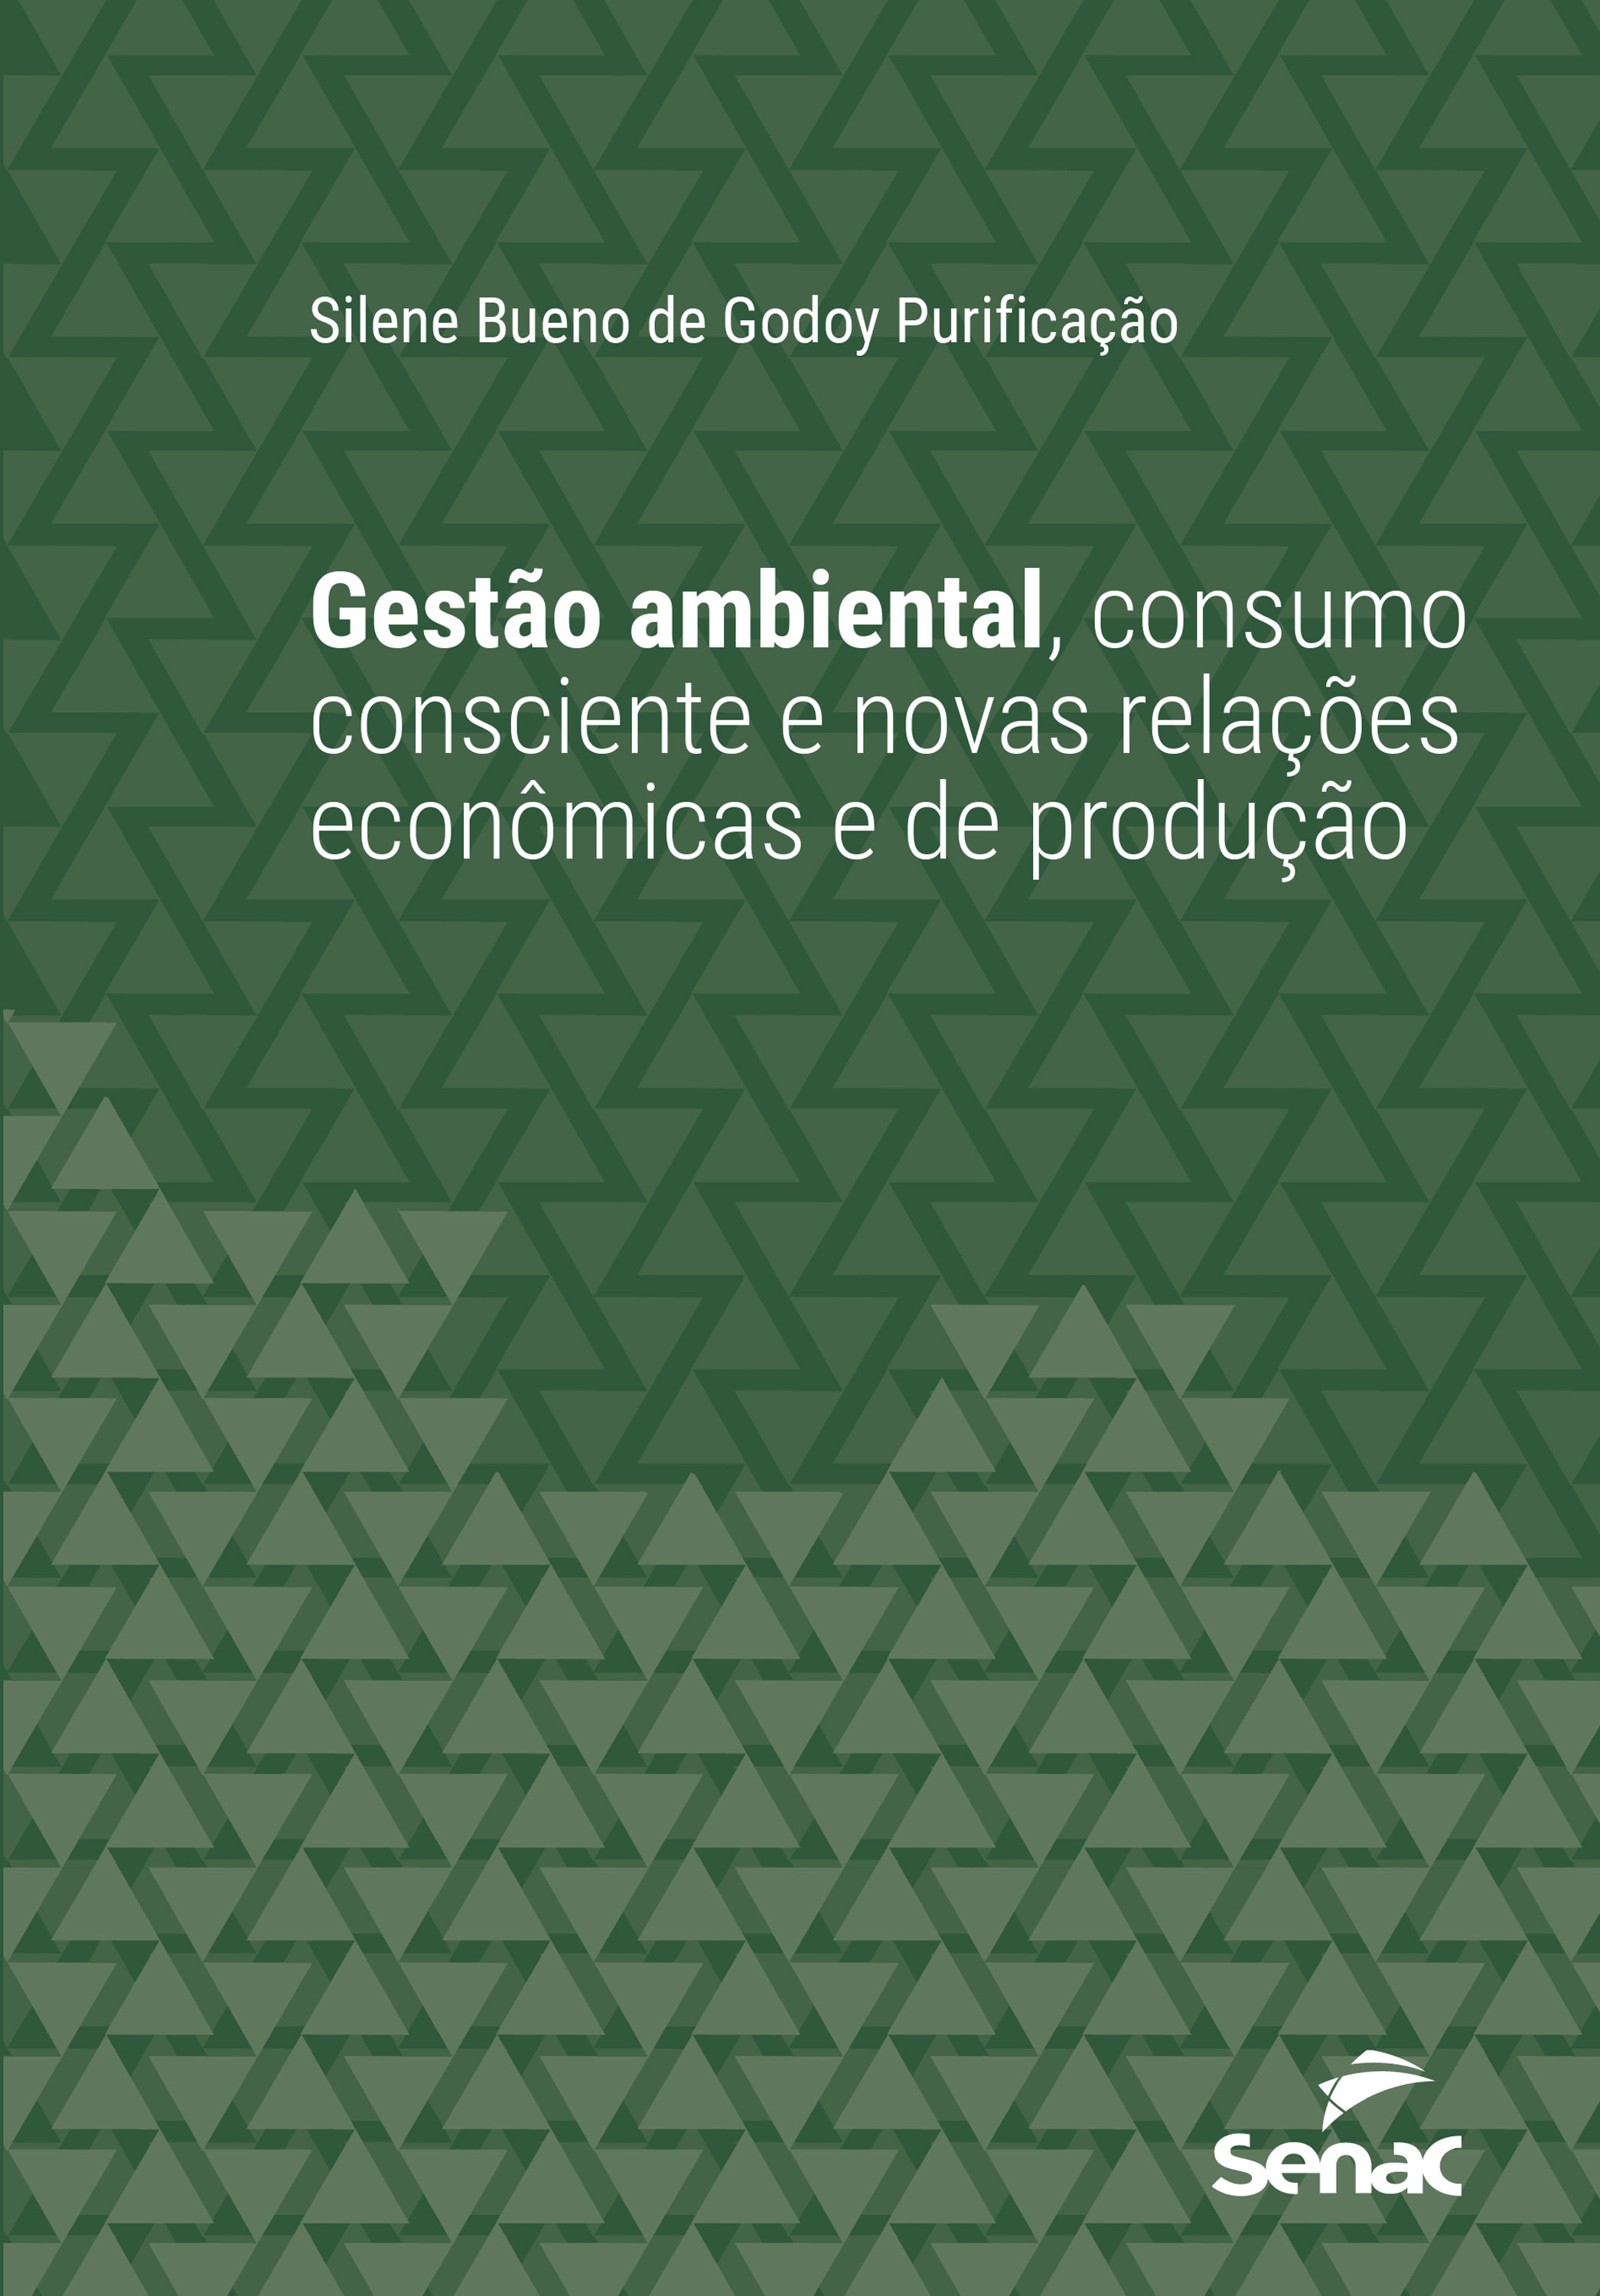 Gestão ambiental, consumo consciente e novas relações econômicas e de produção